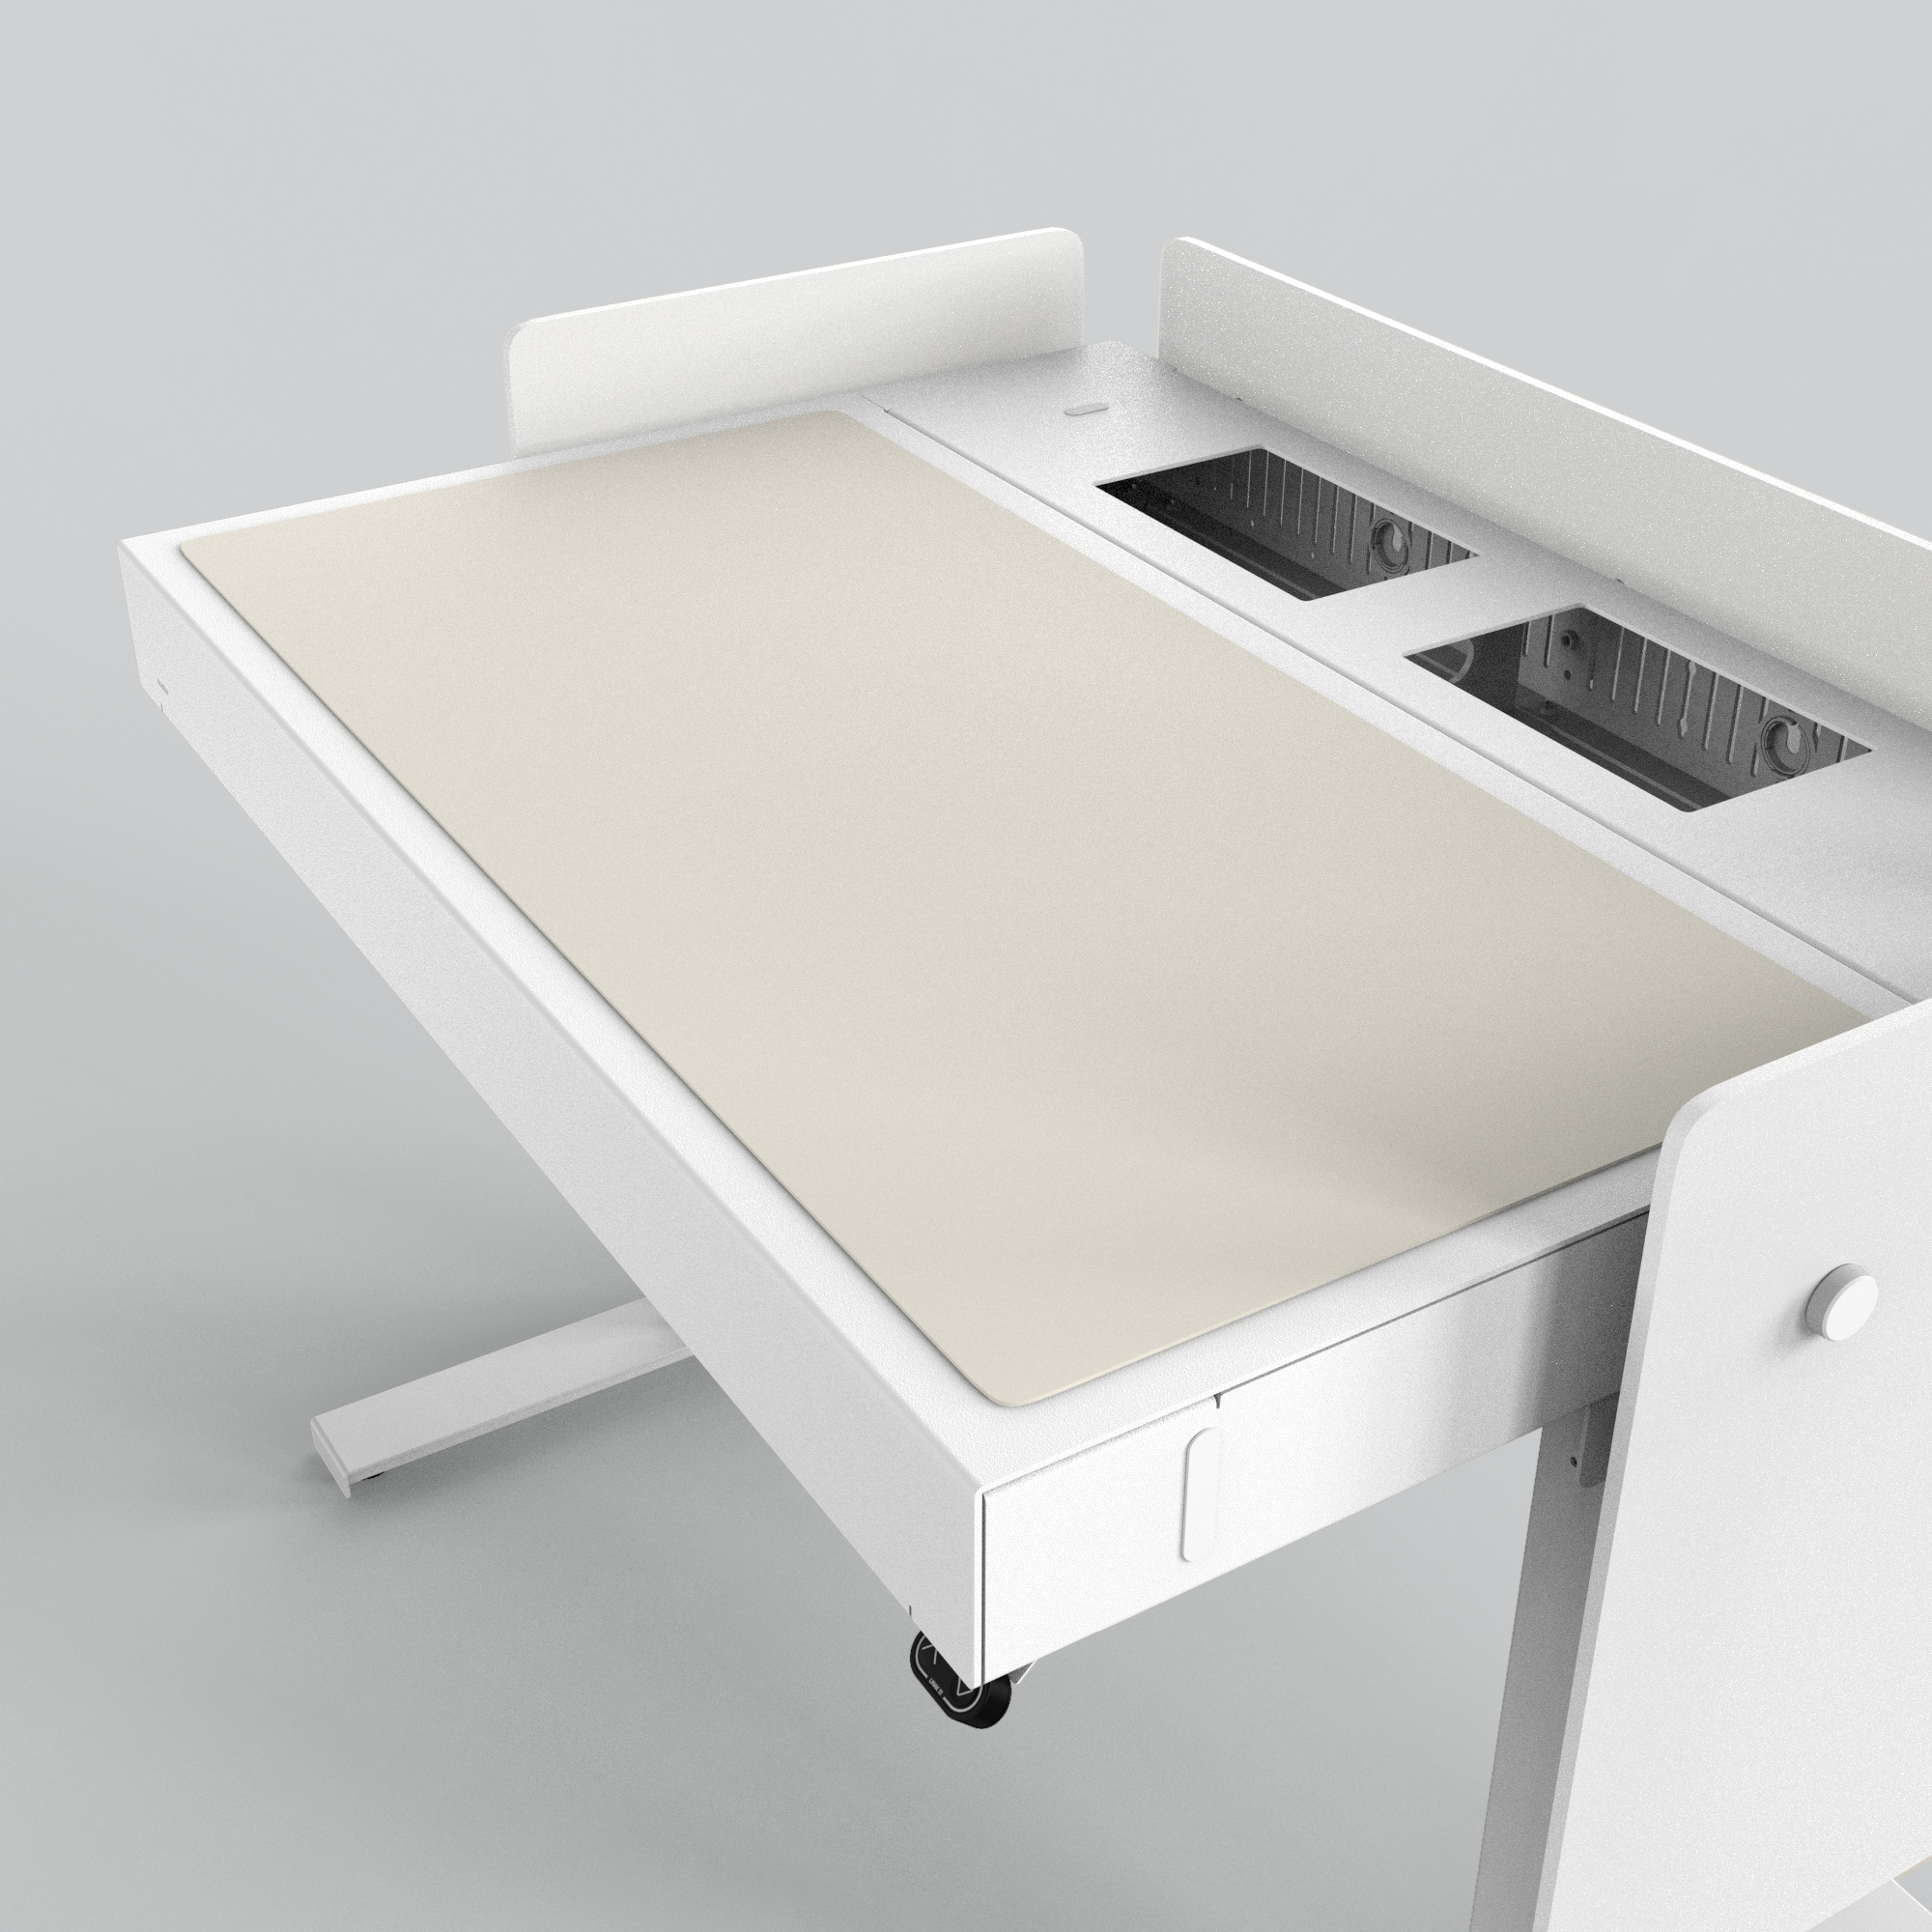 H922-4176 4U Deskpad - Mushroom